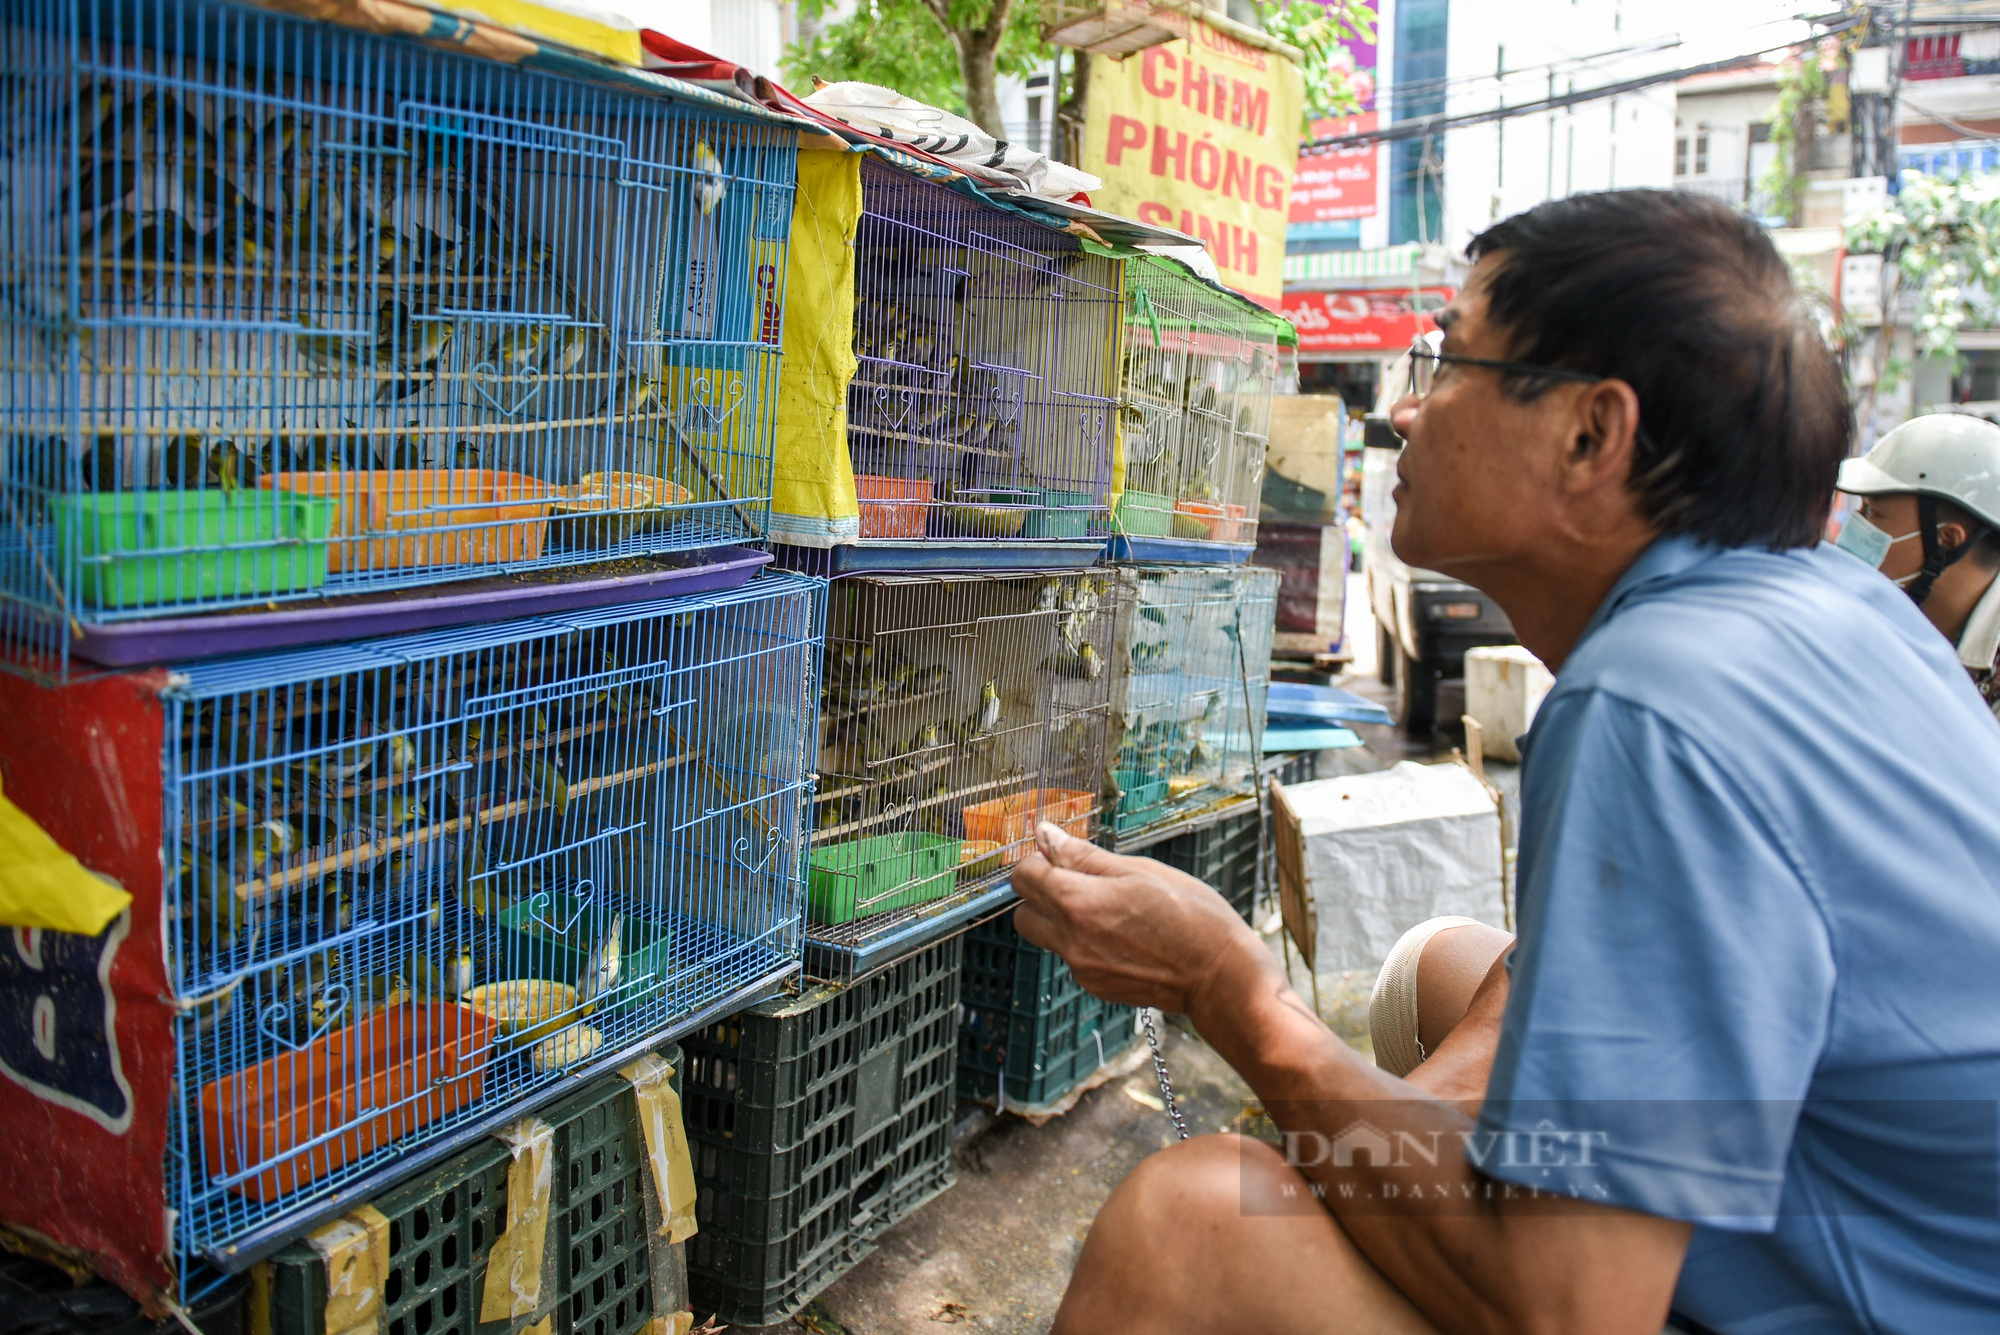 Hàng nghìn chú chim phóng sinh được bán ra trong dịp rằm tháng 7 - Ảnh 7.